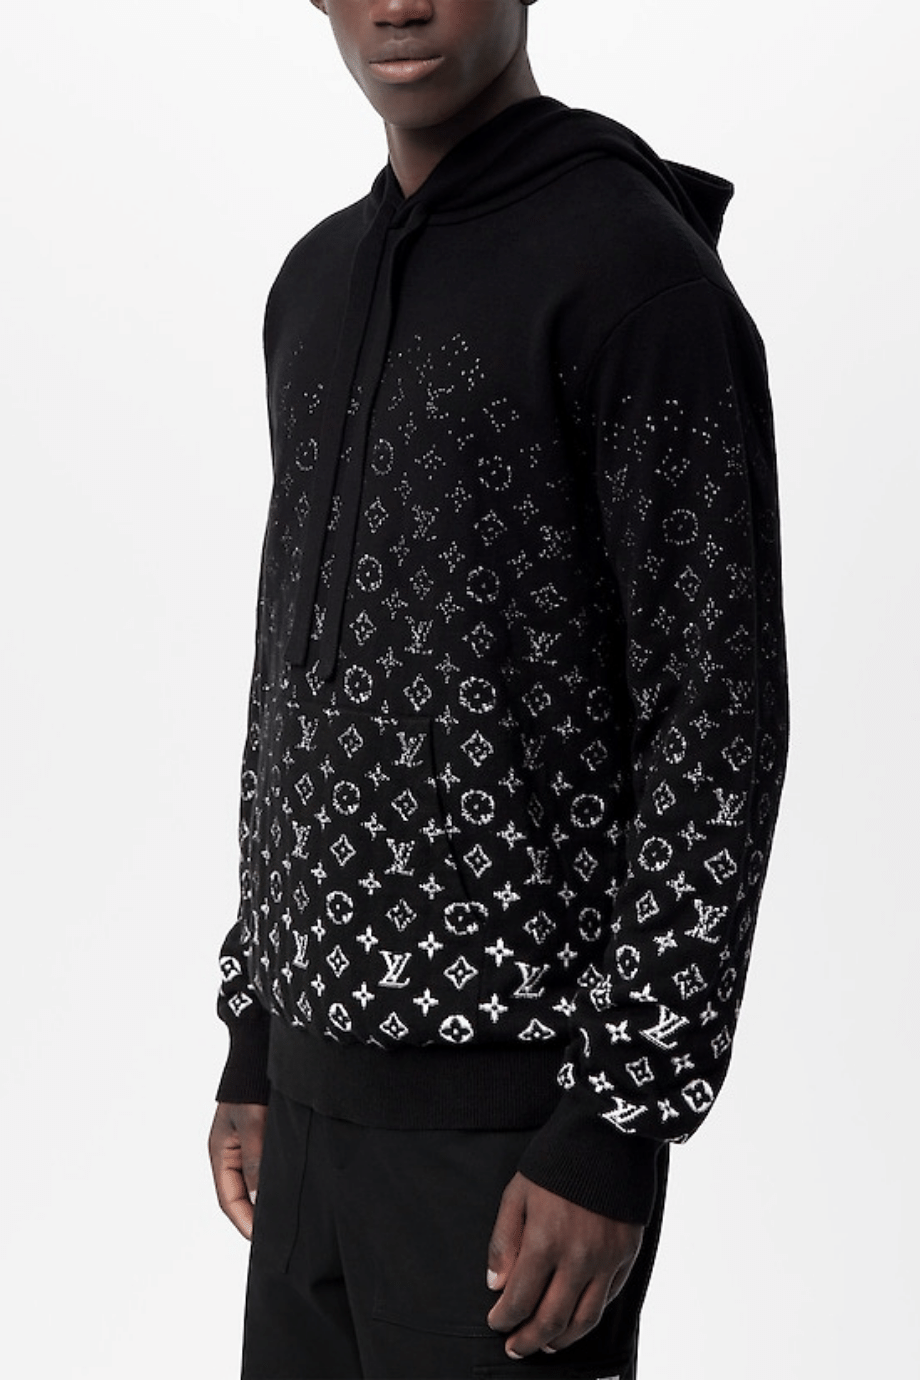 Louis Vuitton Lvse Monogram Fleece Tracksuit, Black, M